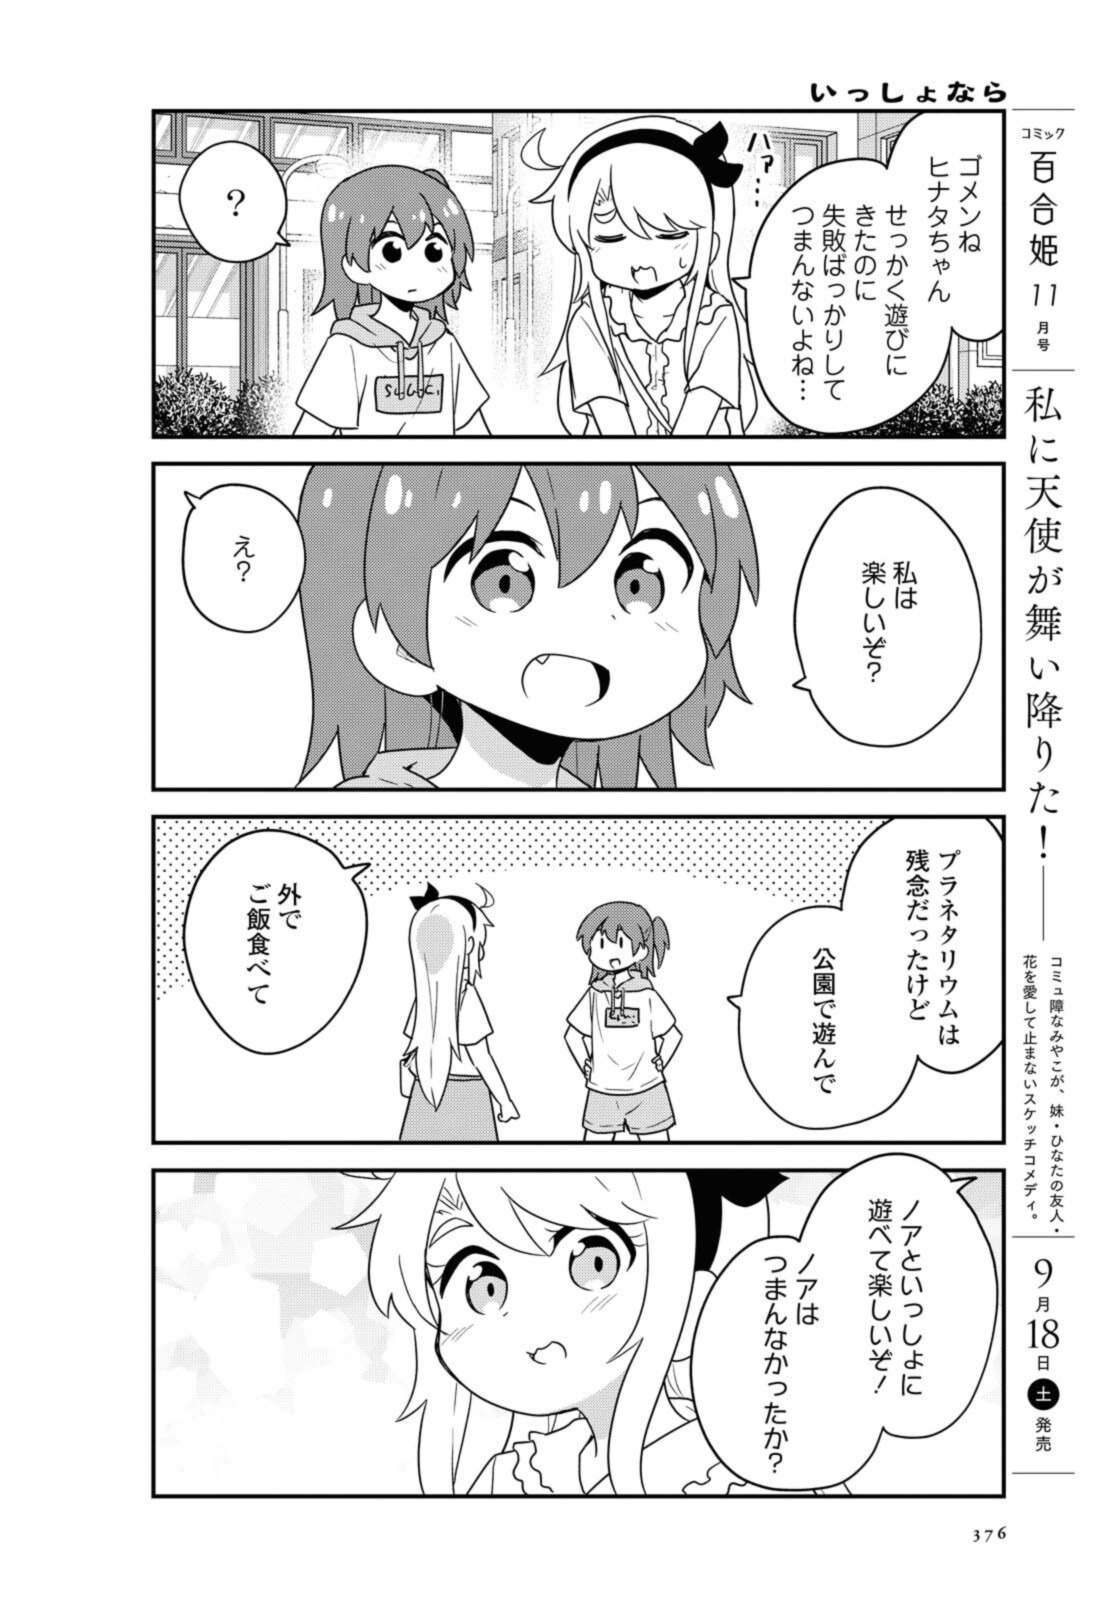 Watashi ni Tenshi ga Maiorita! - Chapter 86.2 - Page 5